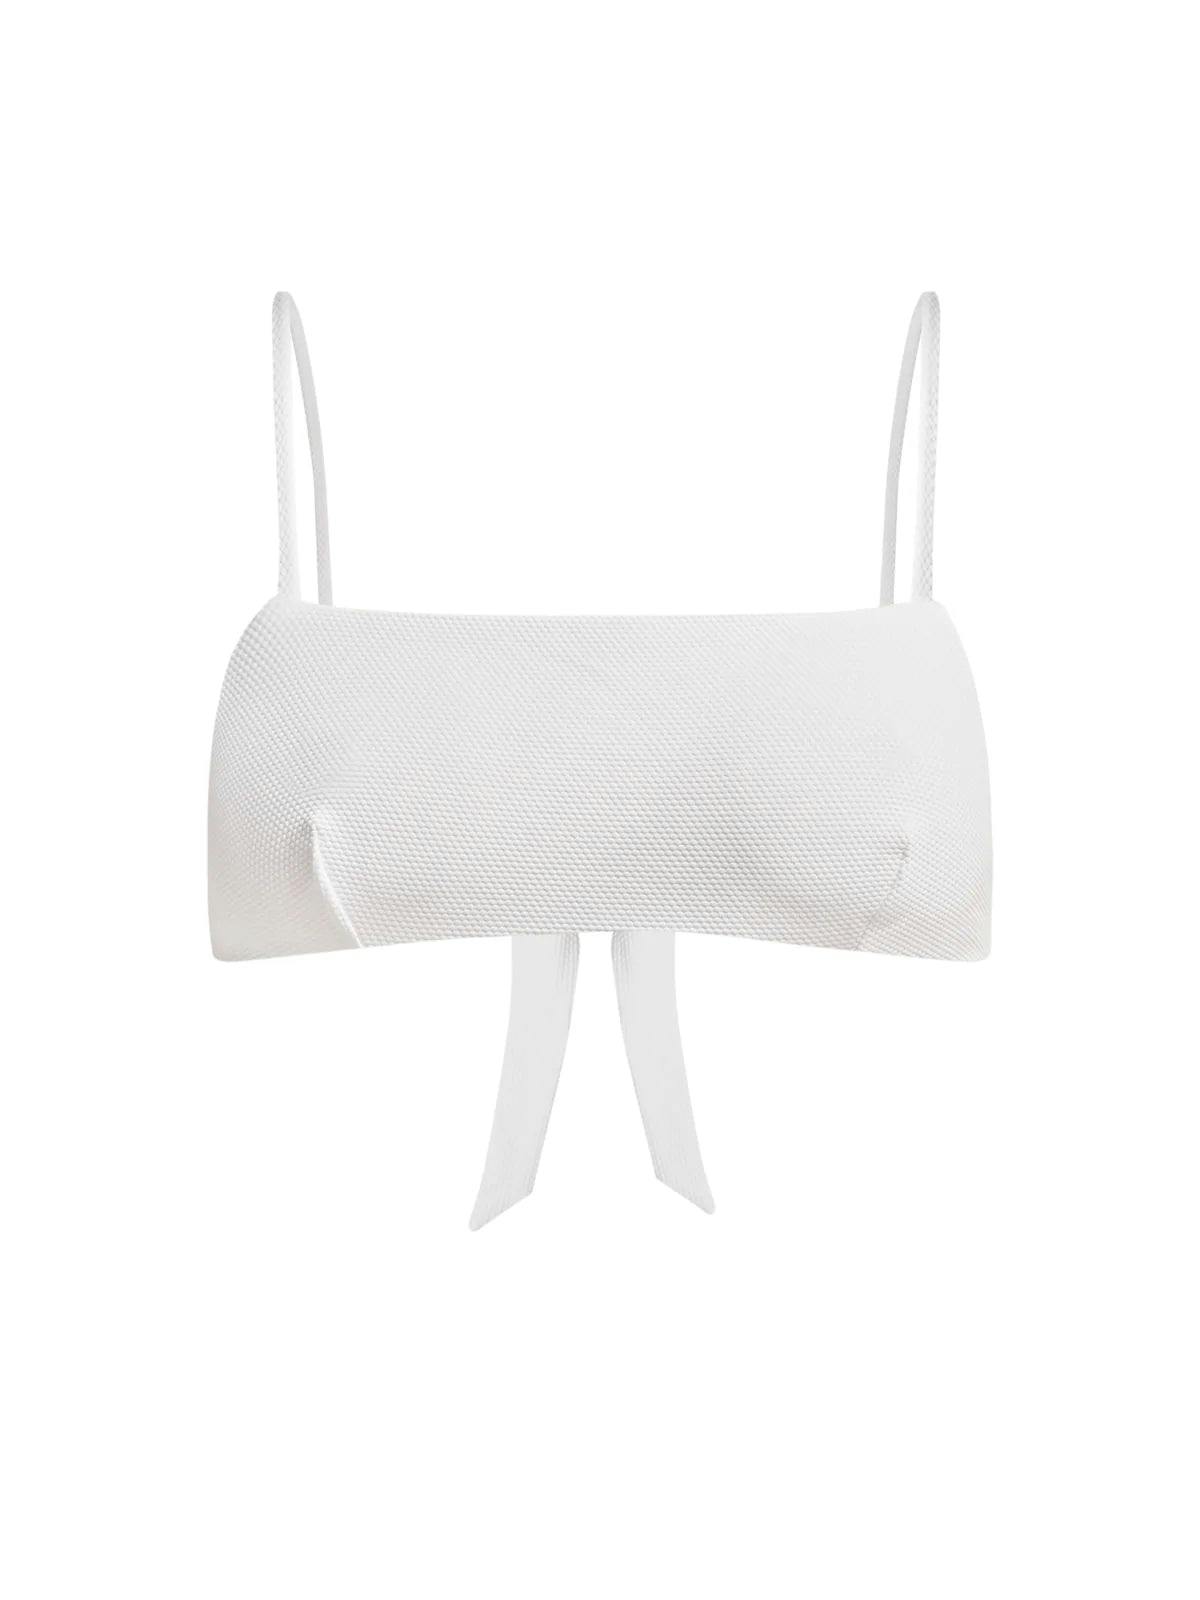 Ana white bikini top